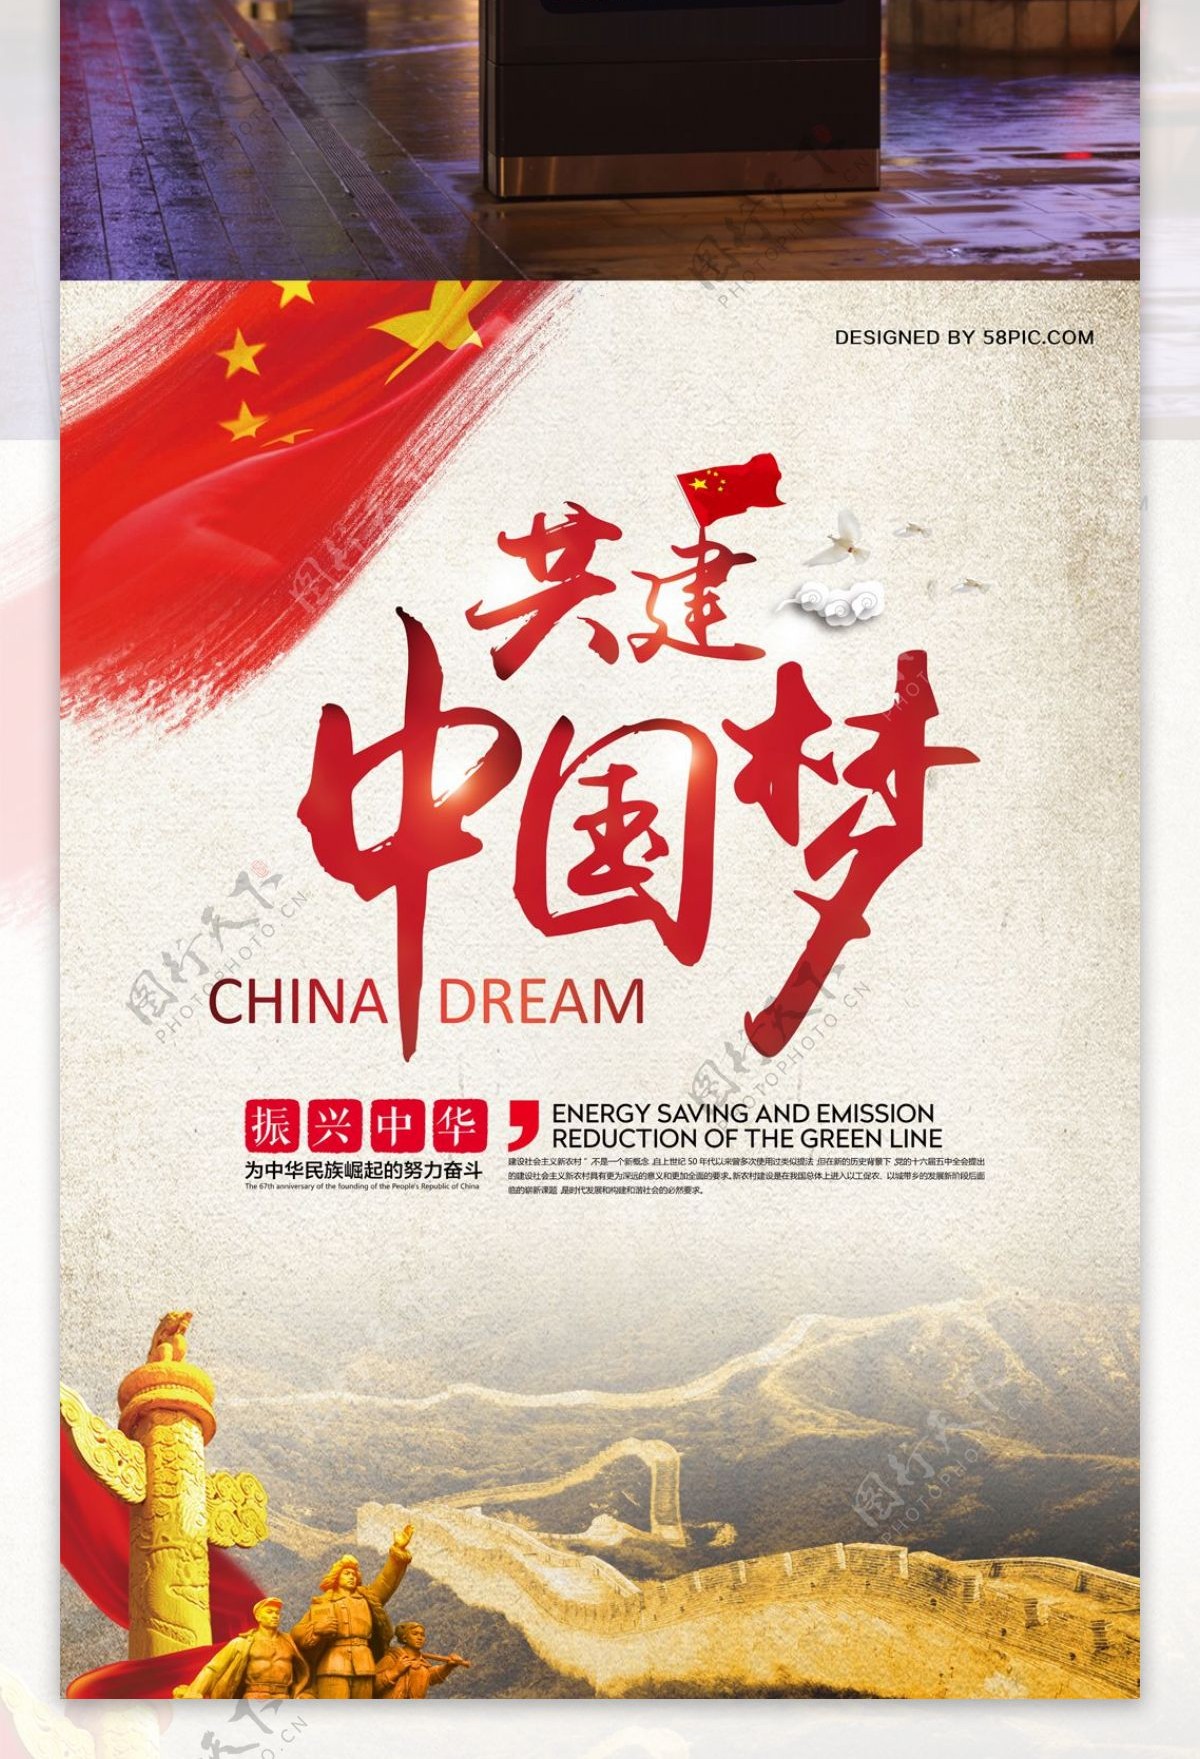 共建中国梦